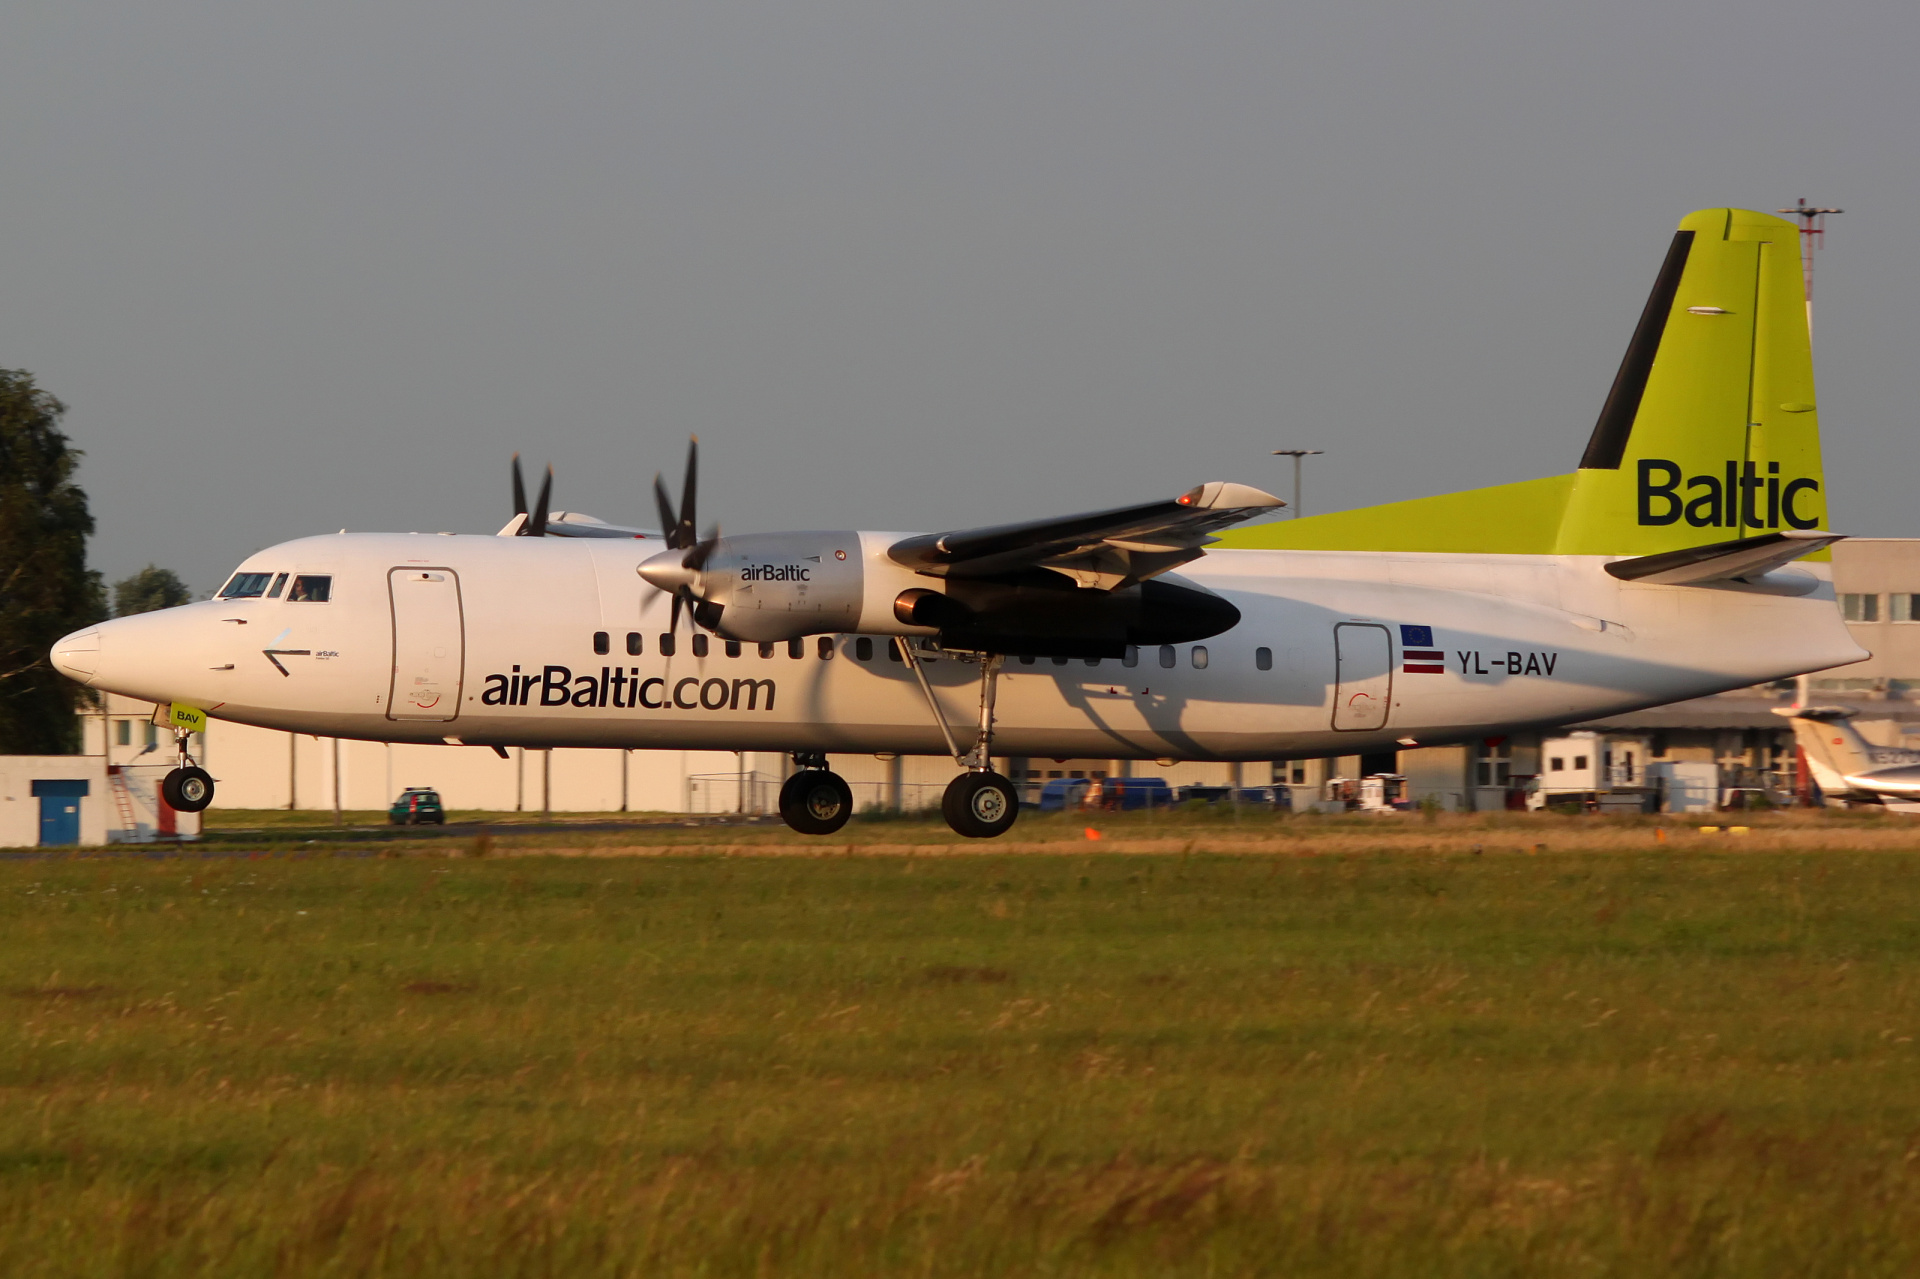 YL-BAV (Samoloty » Spotting na EPWA » Fokker  50 » airBaltic)